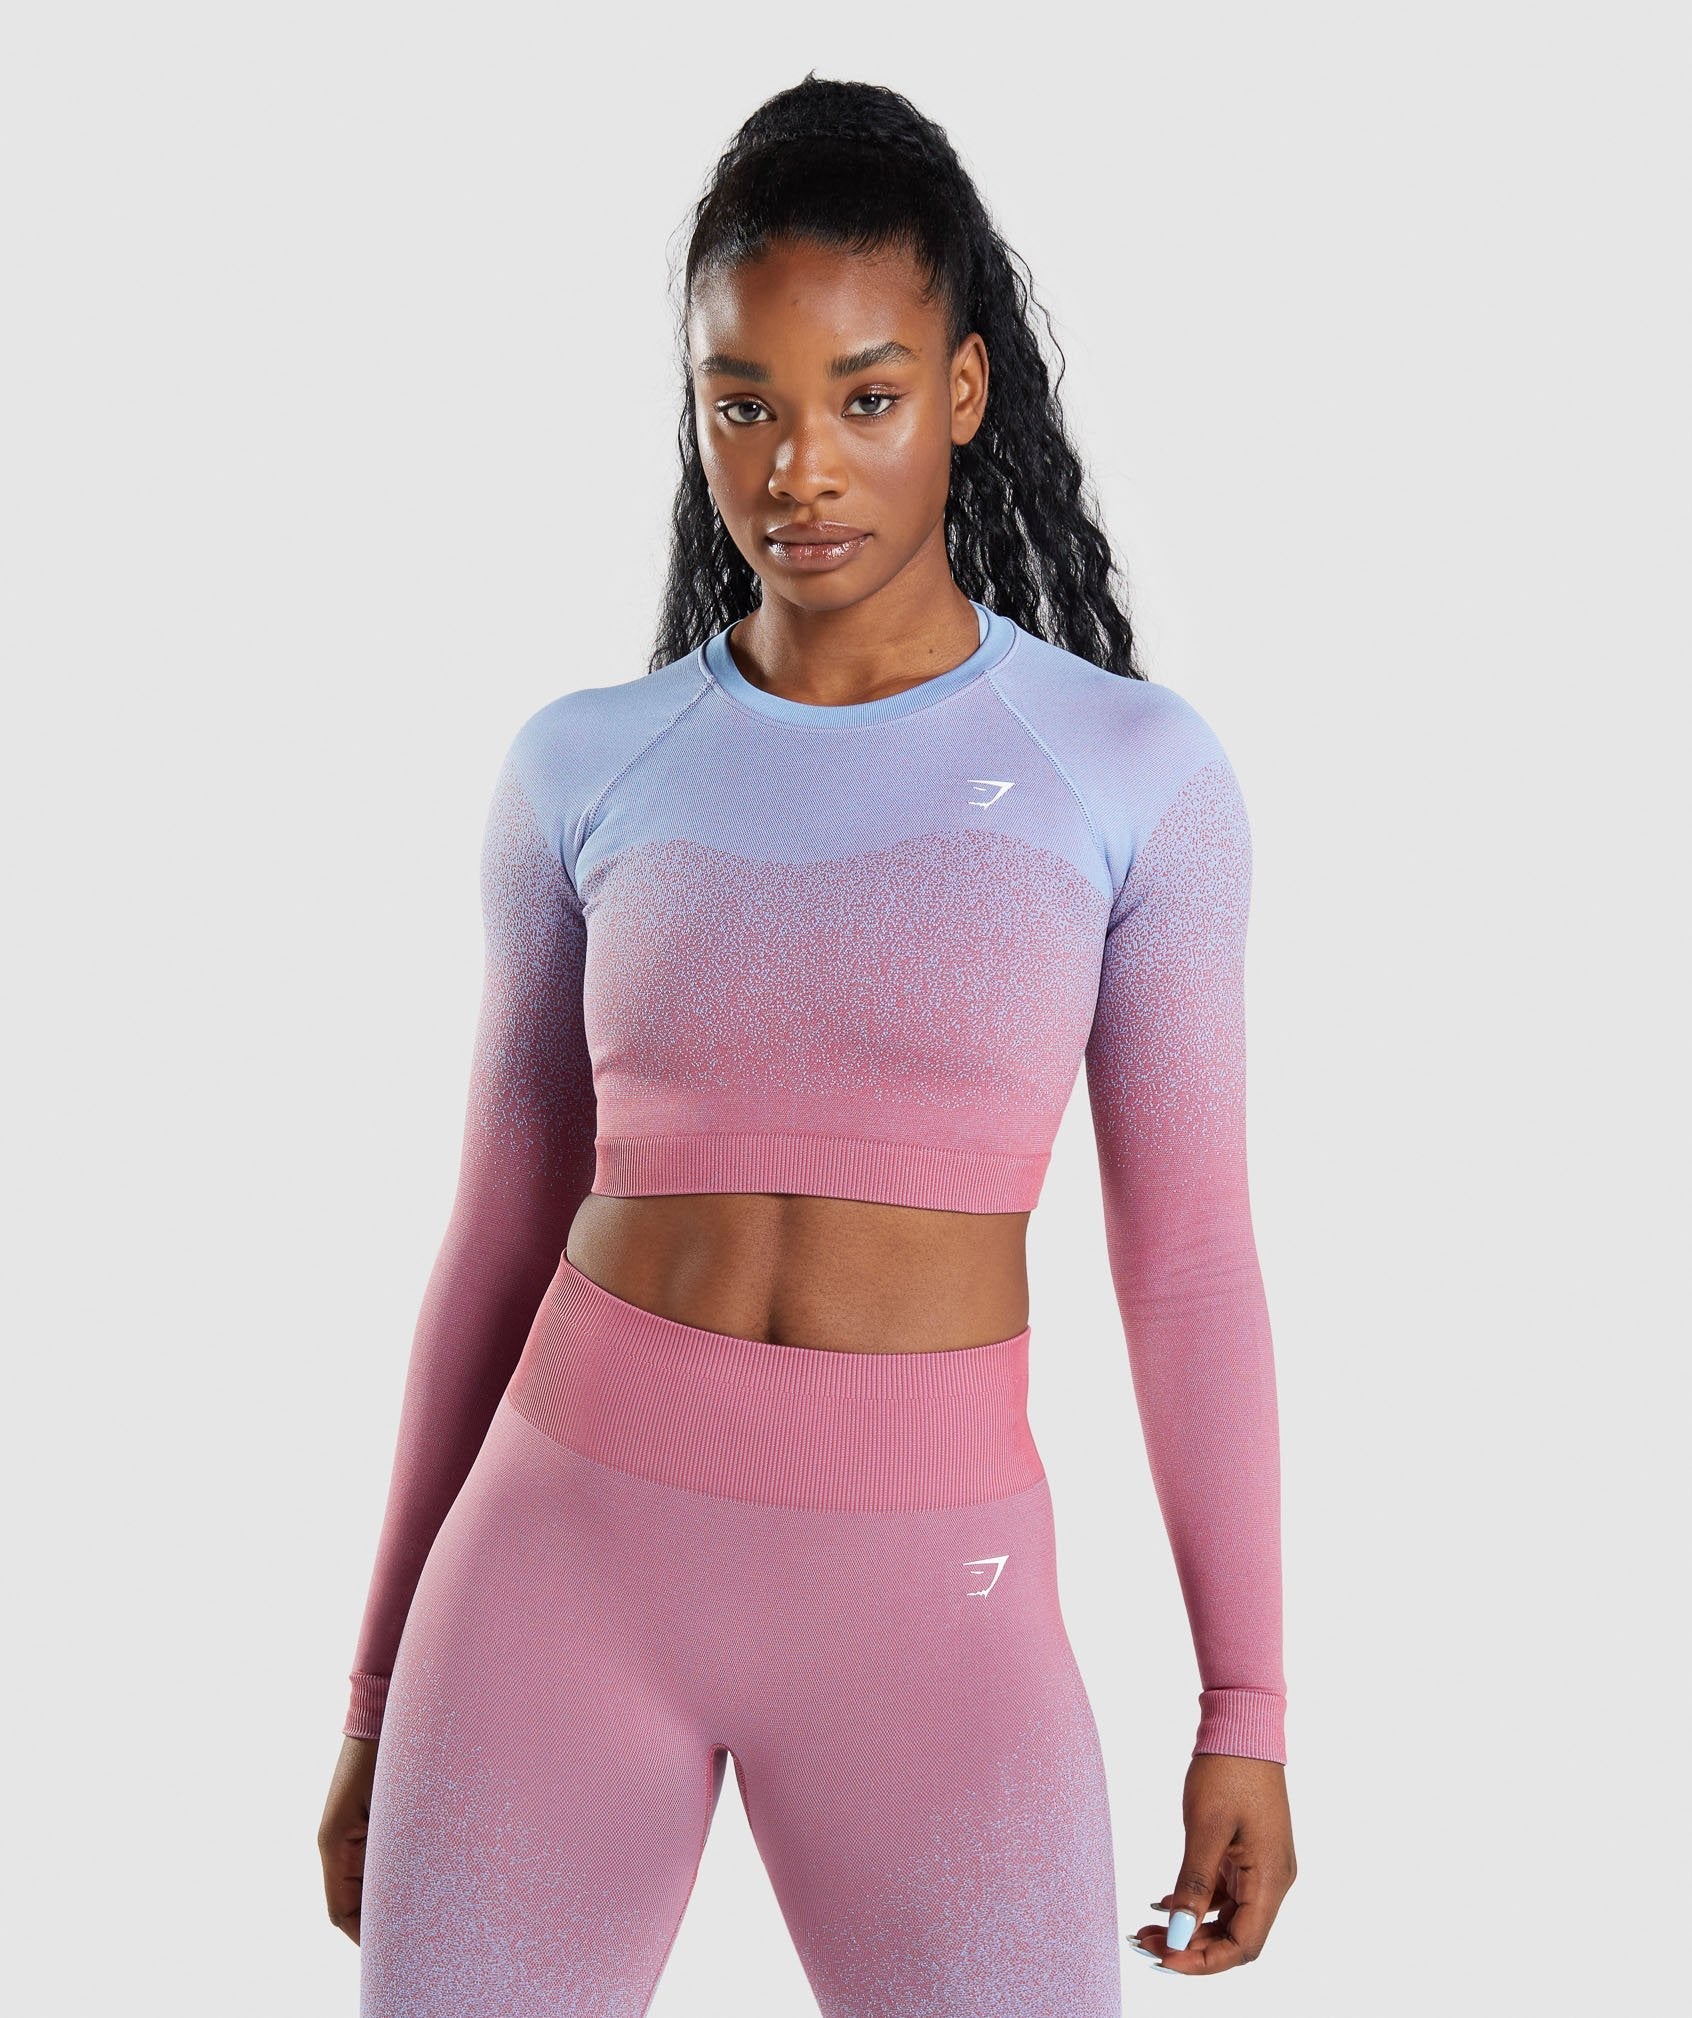 Gymshark Adapt Seamless Long Sleeve Crop Top - Rose Pink/Light Blue | Gymshark